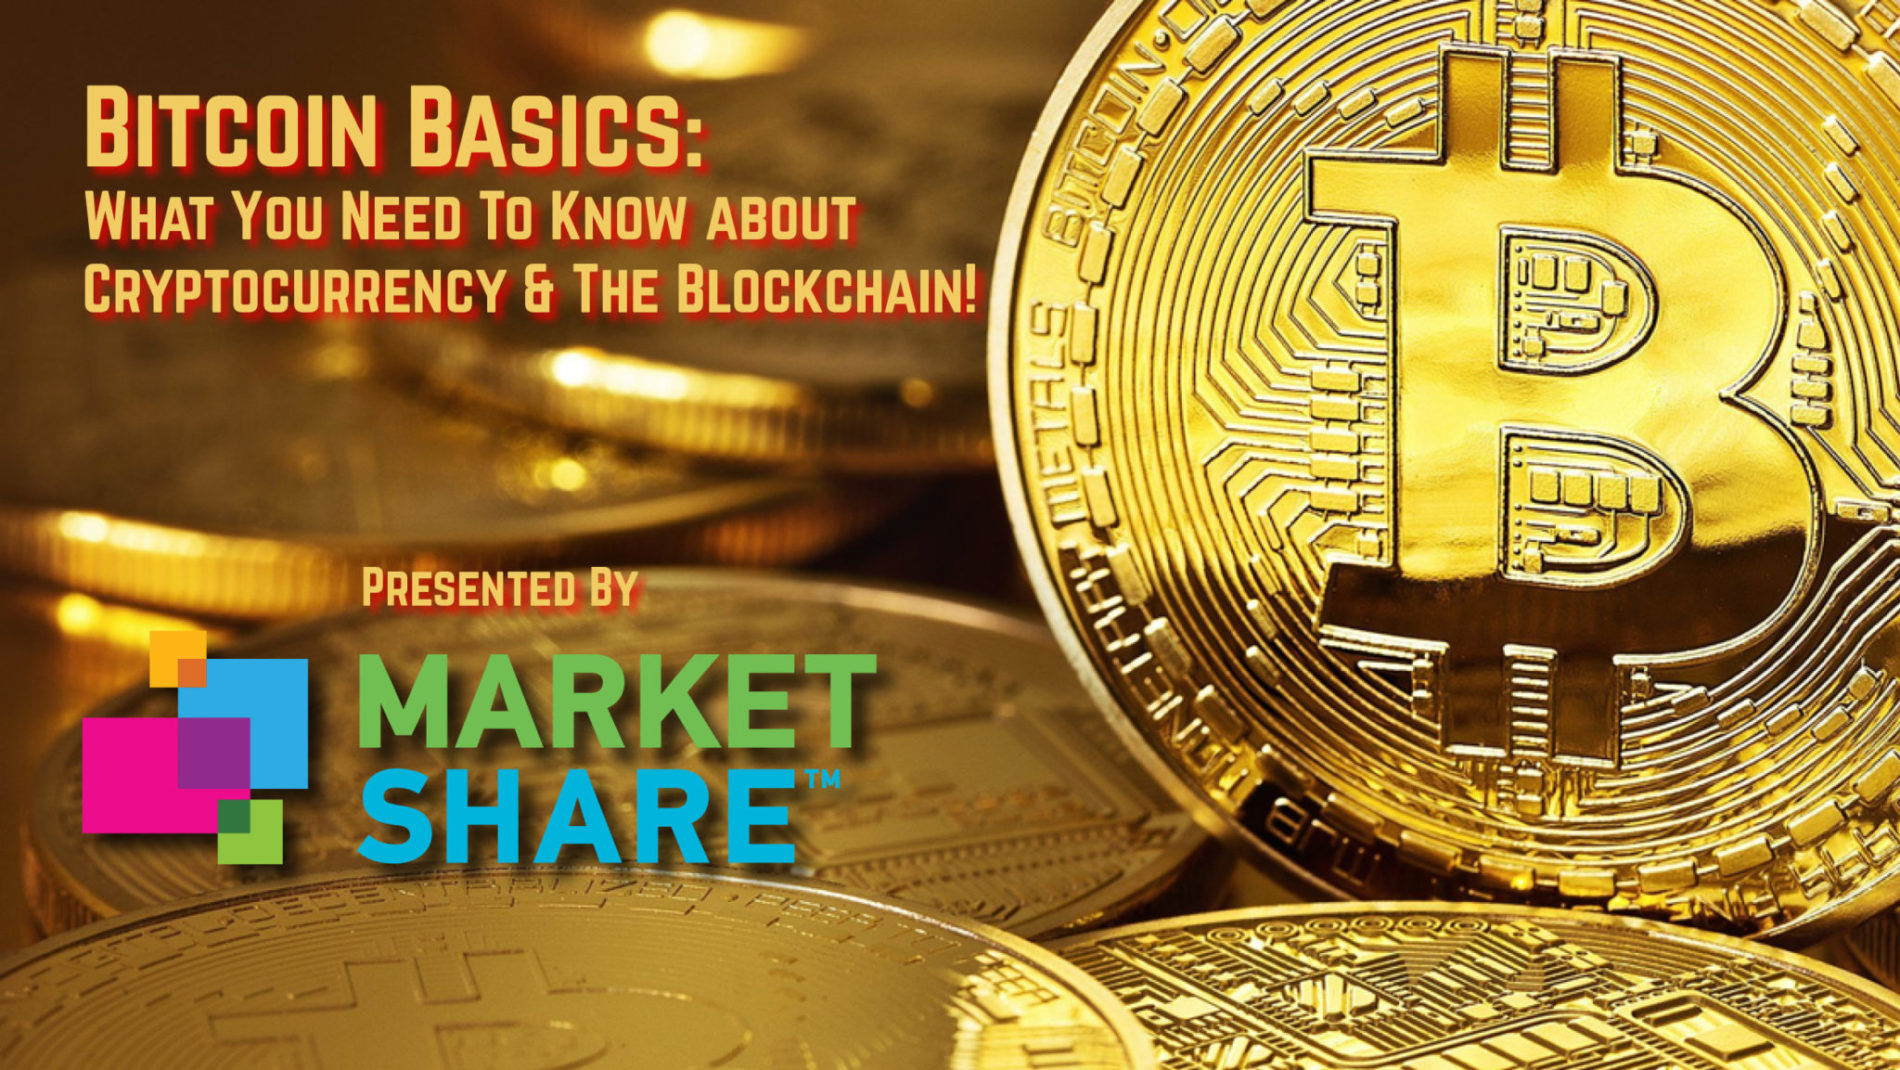 The MarketShare Podcast – Bitcoin Basics Live @ Connie’s Ric Rac